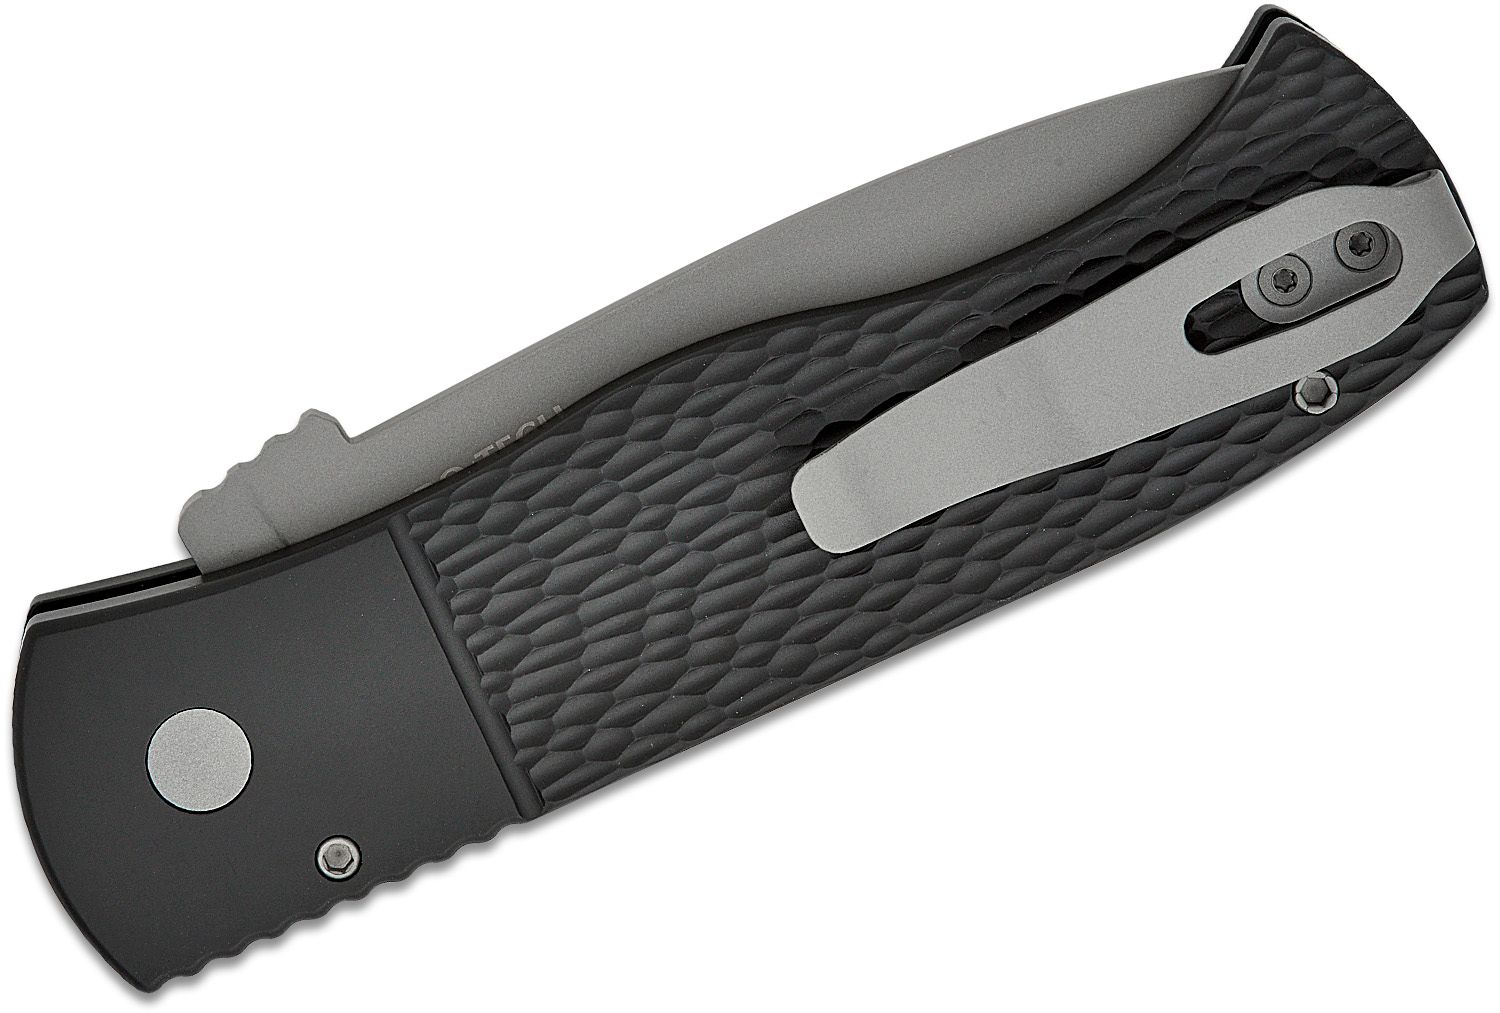 Pro-Tech E7T05 Emerson CQC7 AUTO Folding Knife 3.25